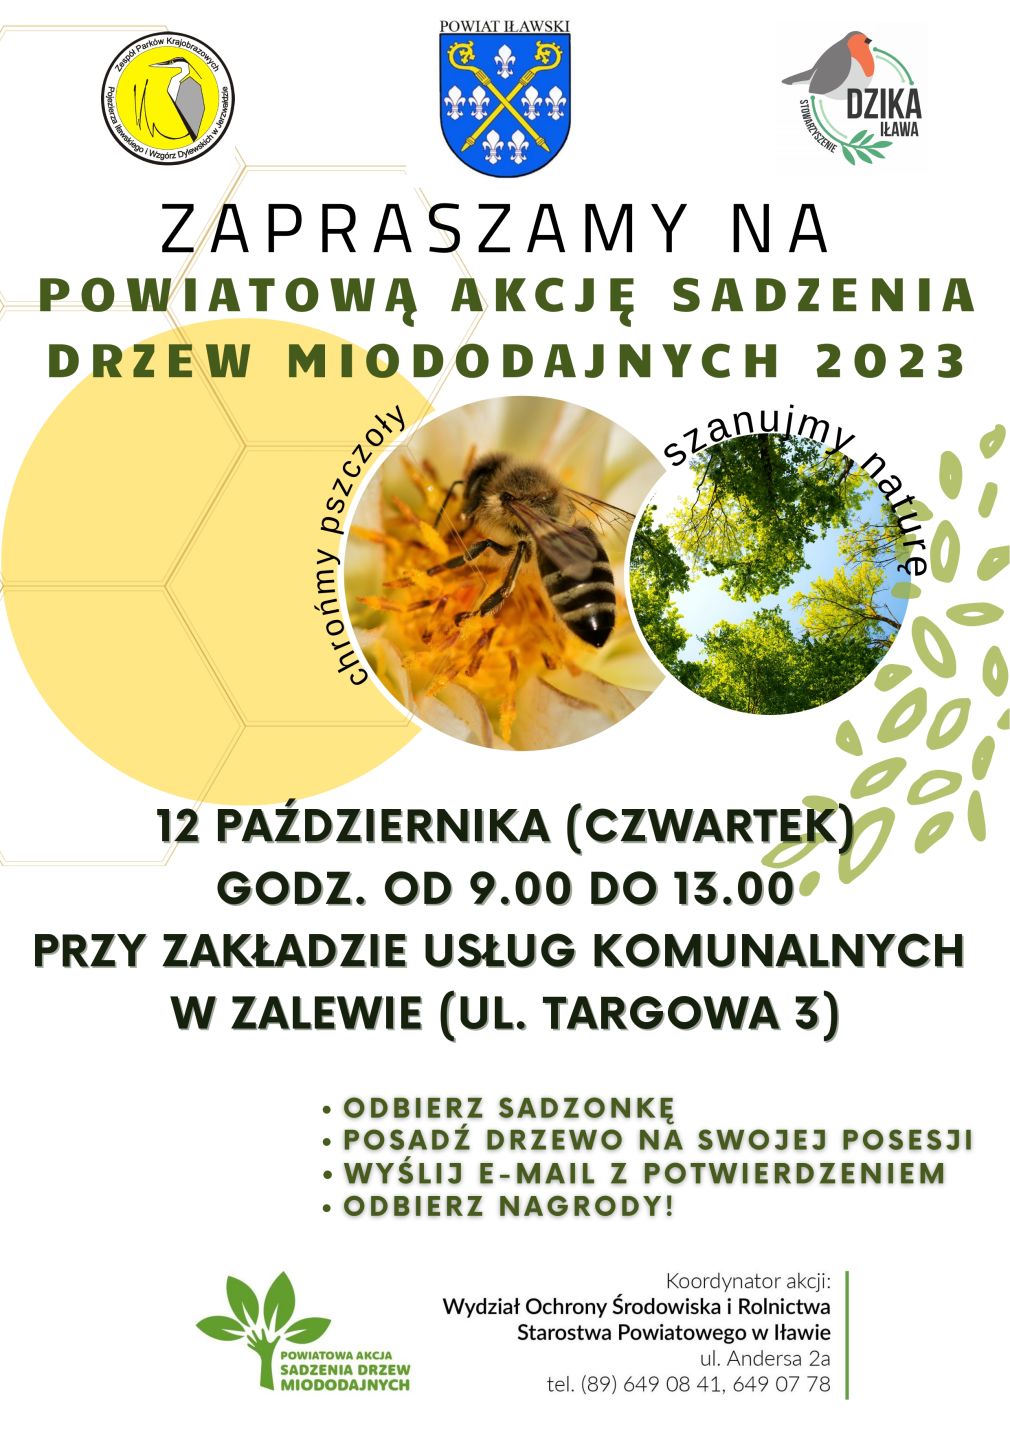 Zaproszenie na powiatową akcję sadzenia drzew-odbierz drzewko przy ZGK w Zalewie